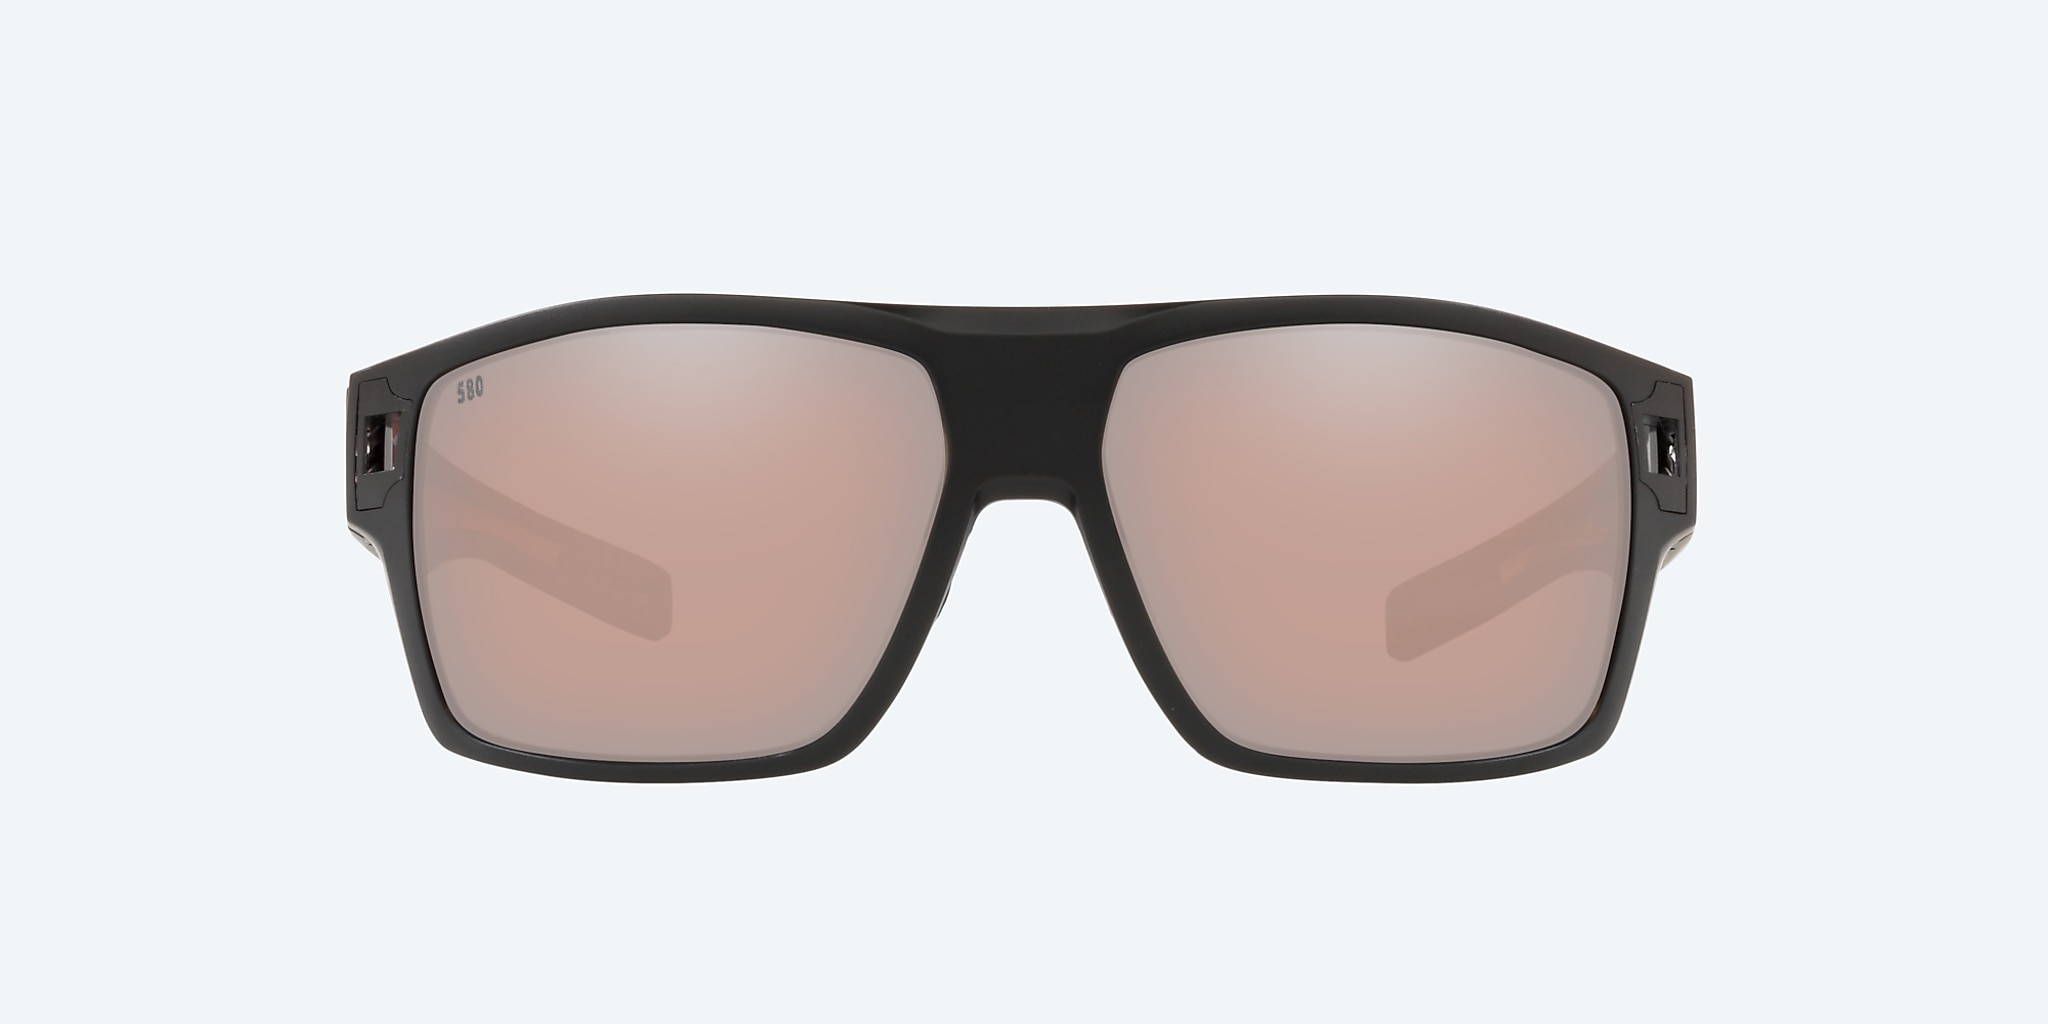 Freedom Series Diego Polarized Sunglasses in Copper Silver Mirror | Costa  Del Mar®